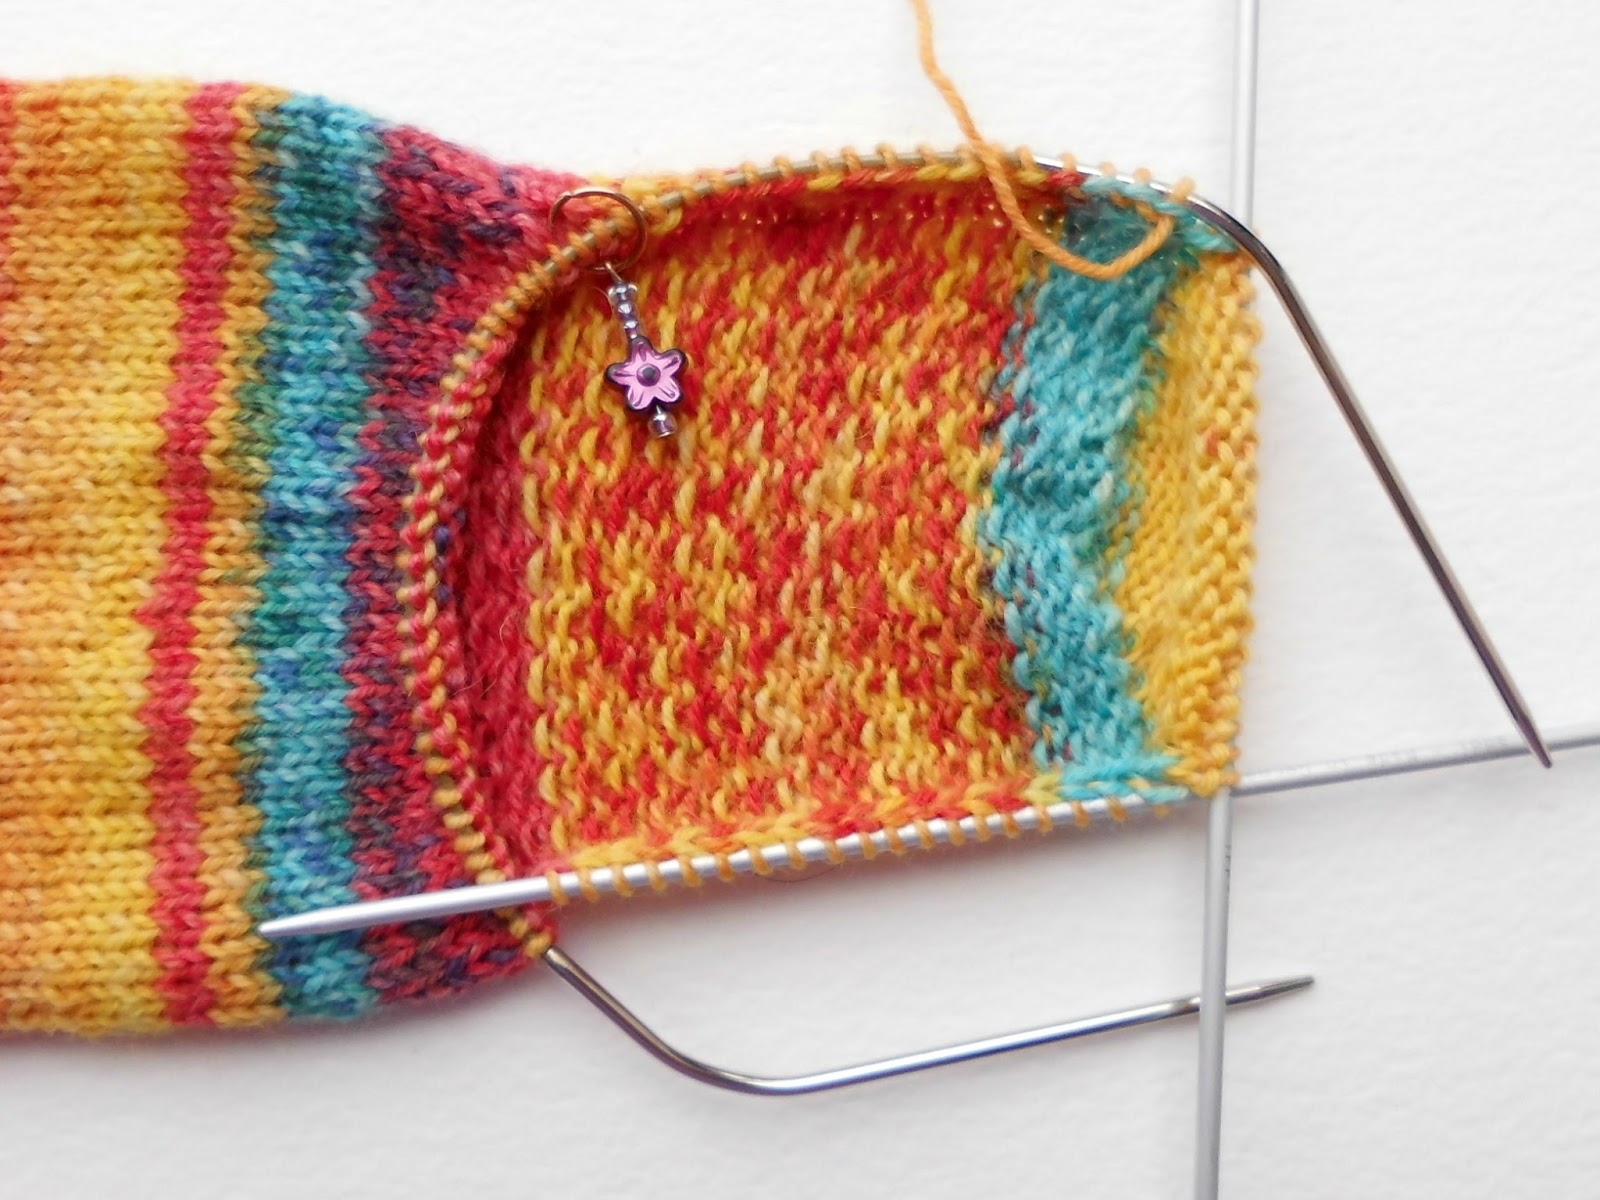 Winwick Mum: Beginner sock knitting: Sockalong - Week 2 - Heel flap ...